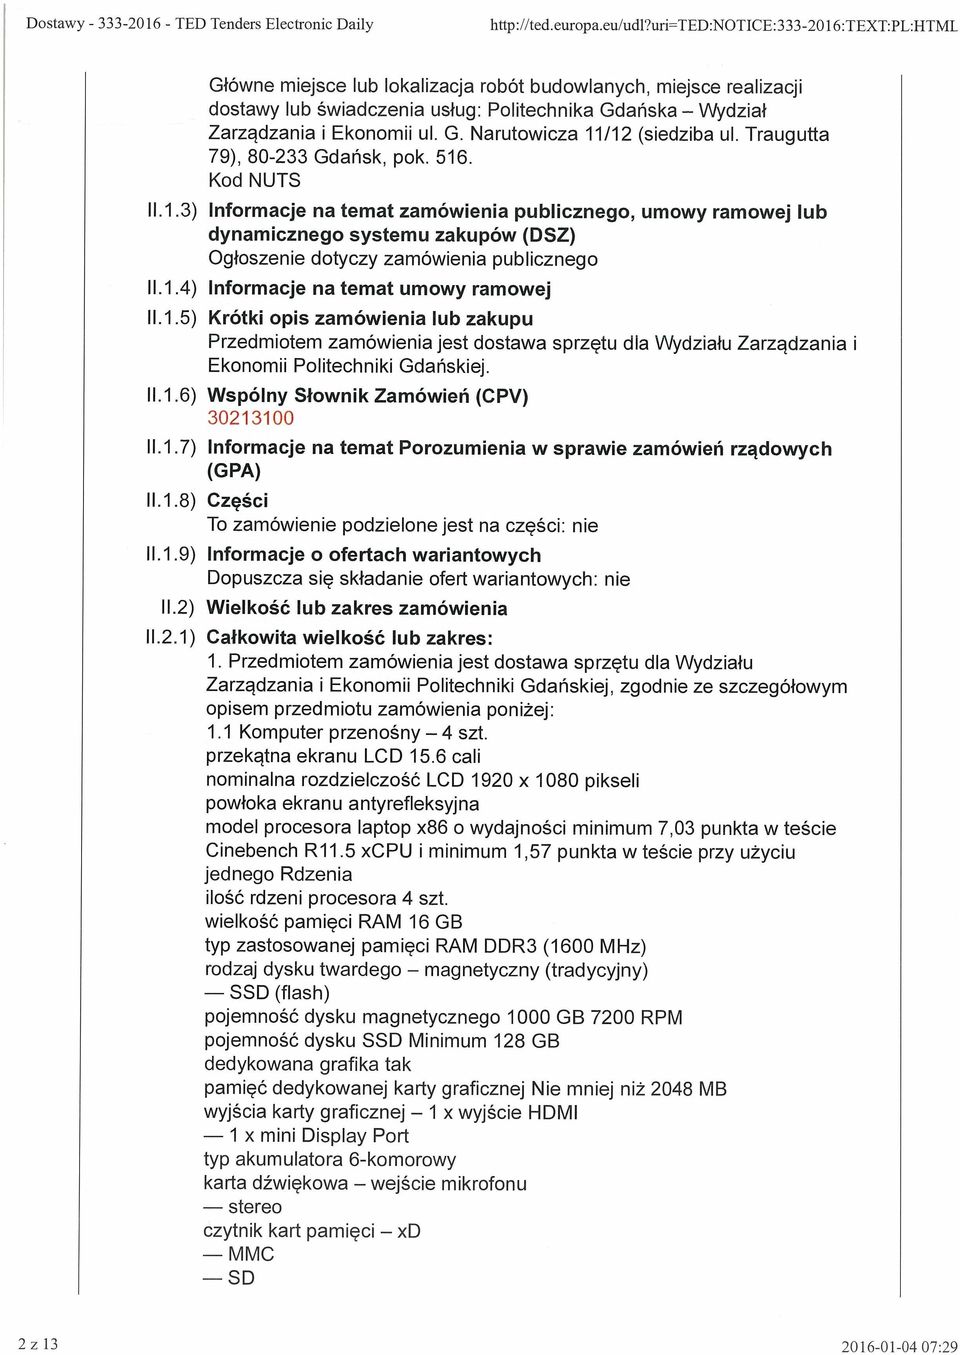 Traugutta 79), 80-233 Gdańsk, pok. 516. Kod NUTS 11.1.3) Informacje na temat zamówienia publicznego, umowy ramowej lub dynamicznego systemu zakupów (DSZ) Ogłoszenie dotyczy zamówienia publicznego 11.